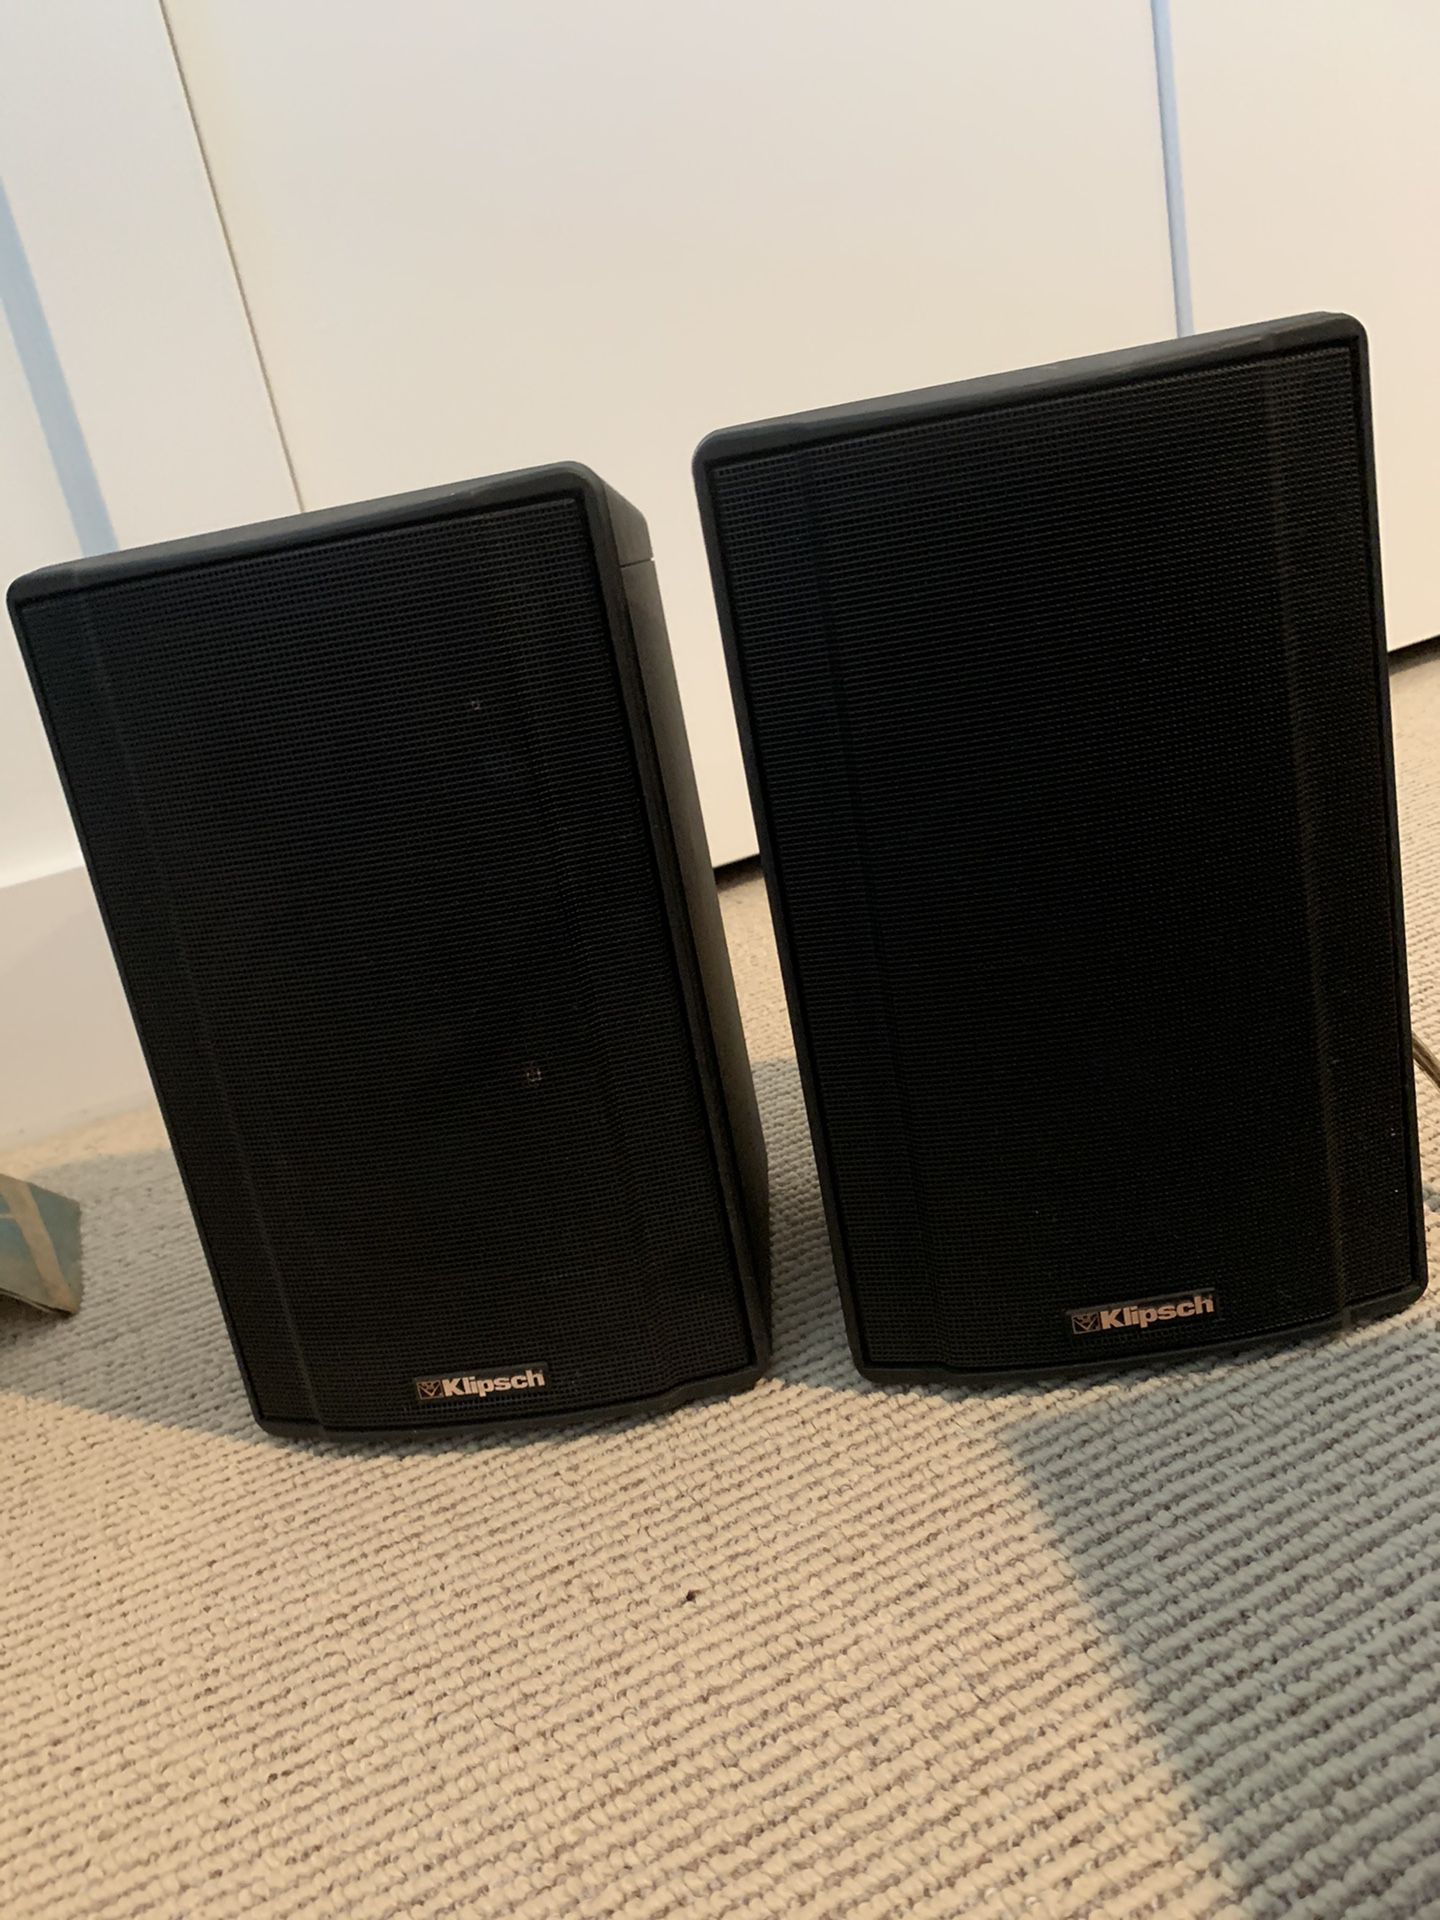 klipsch ksb 1.1 black good condition pair speakers good sound